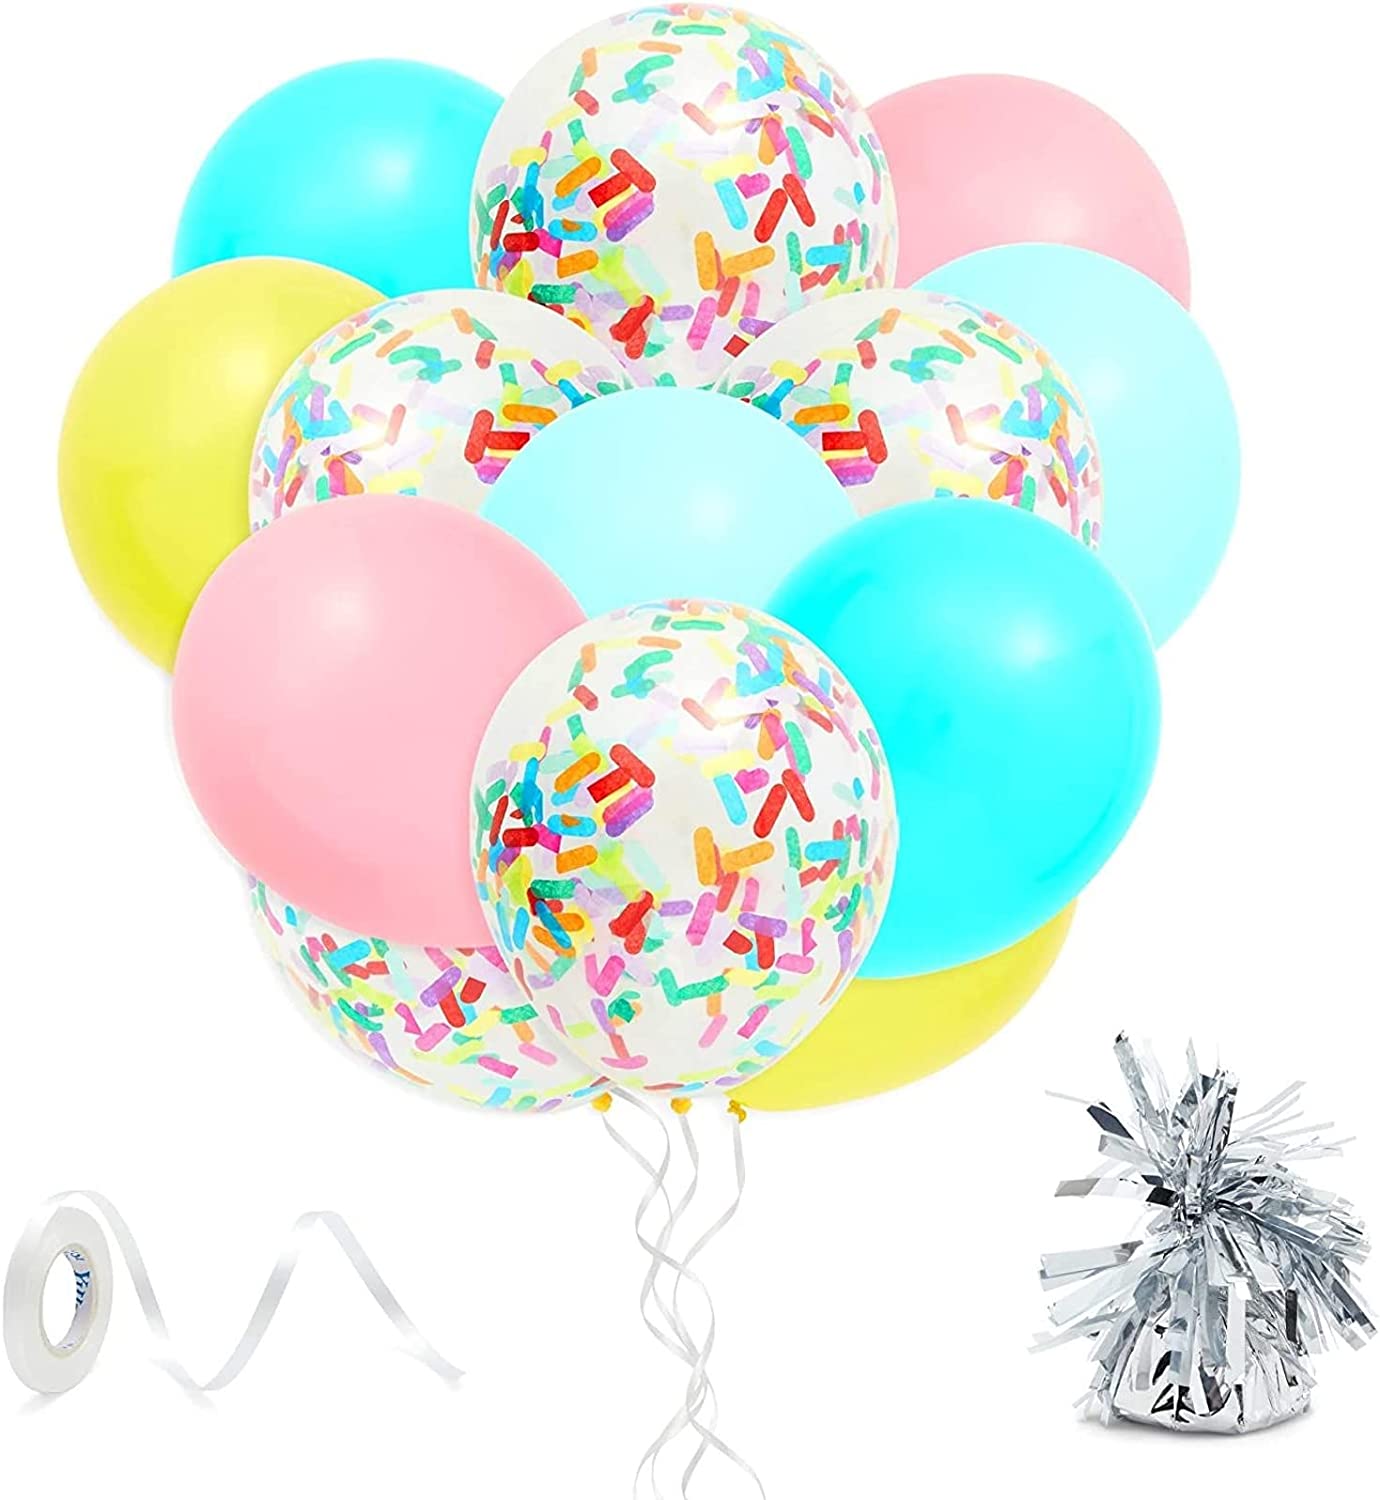 ice-cream-social-balloons